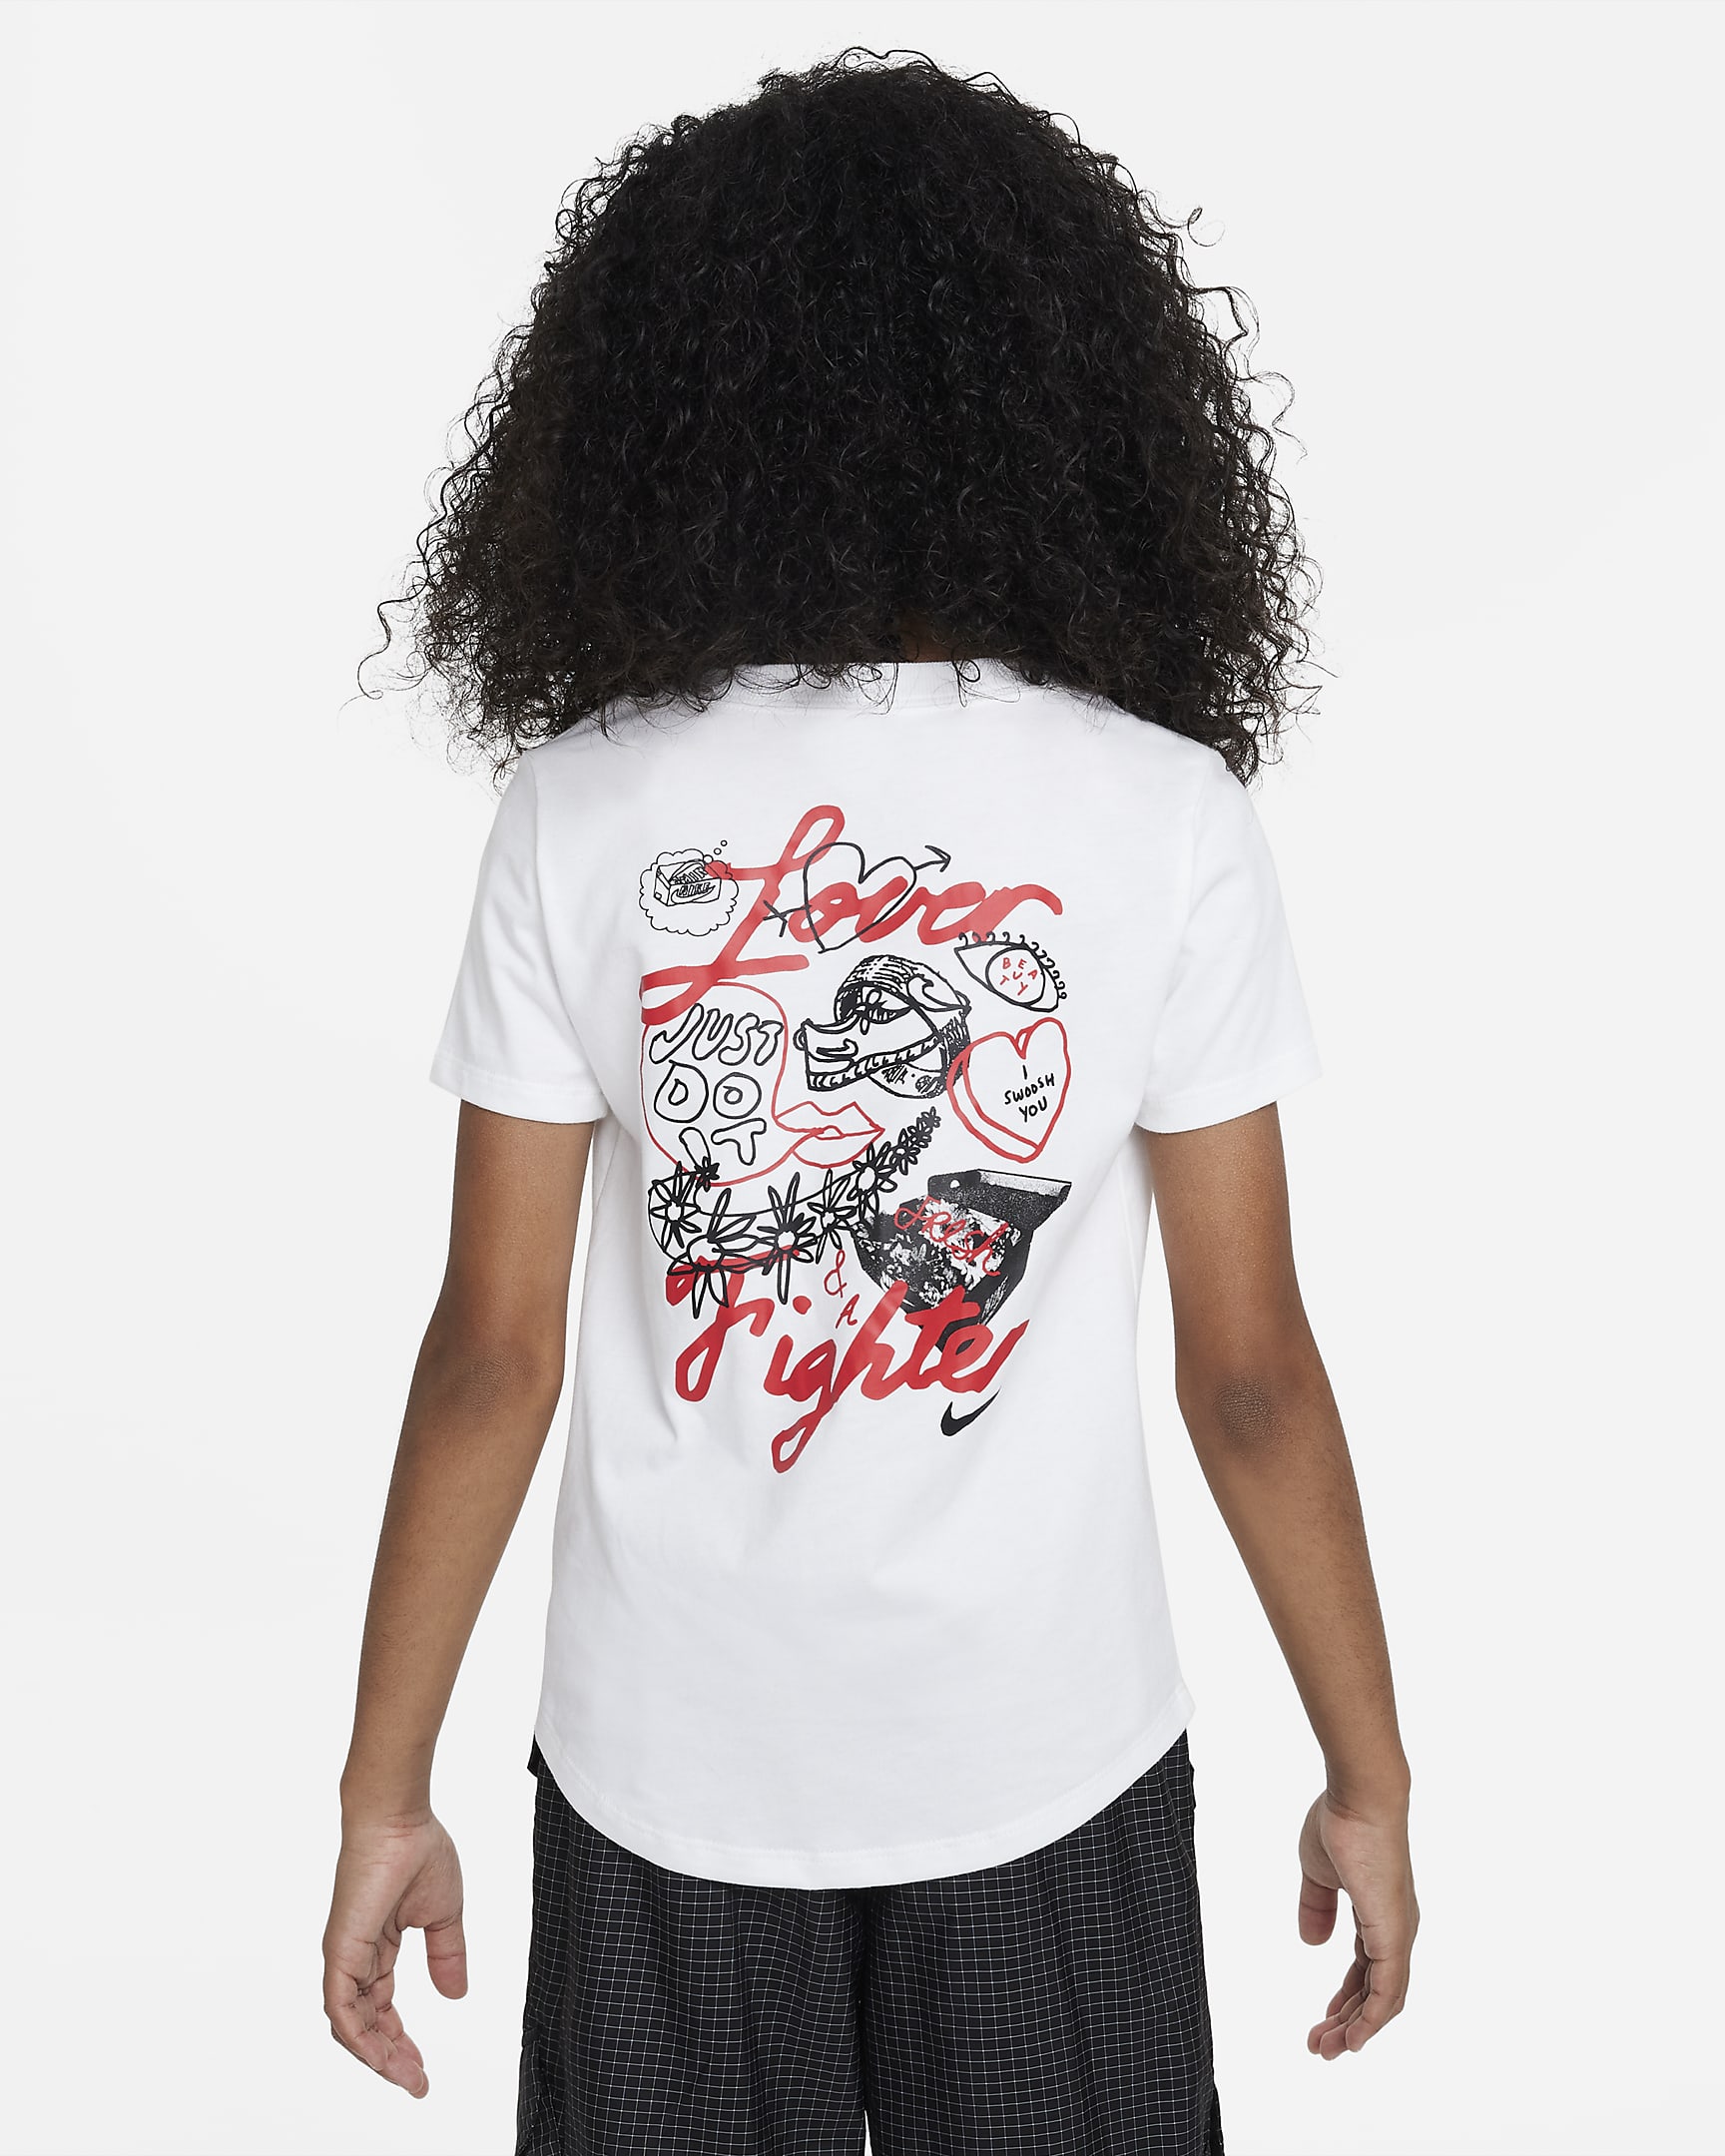 Nike Sportswear Older Kids' (Girls') Scoop-Neck T-Shirt. Nike VN